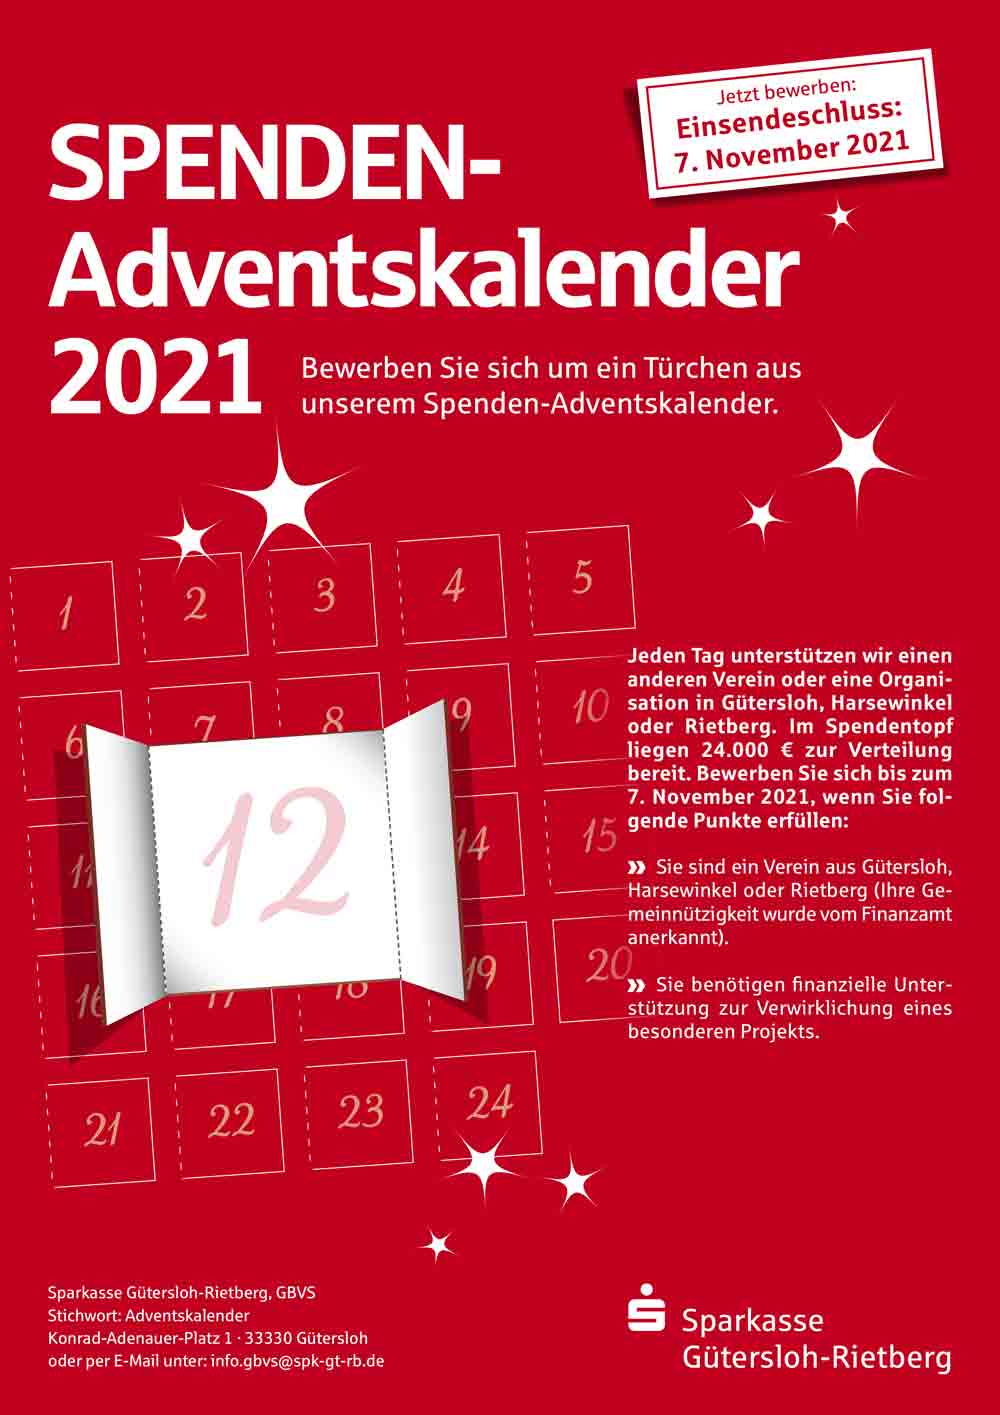 Anzeige: Spenden-Adventskalender 2021 der Sparkasse Gütersloh-Rietberg